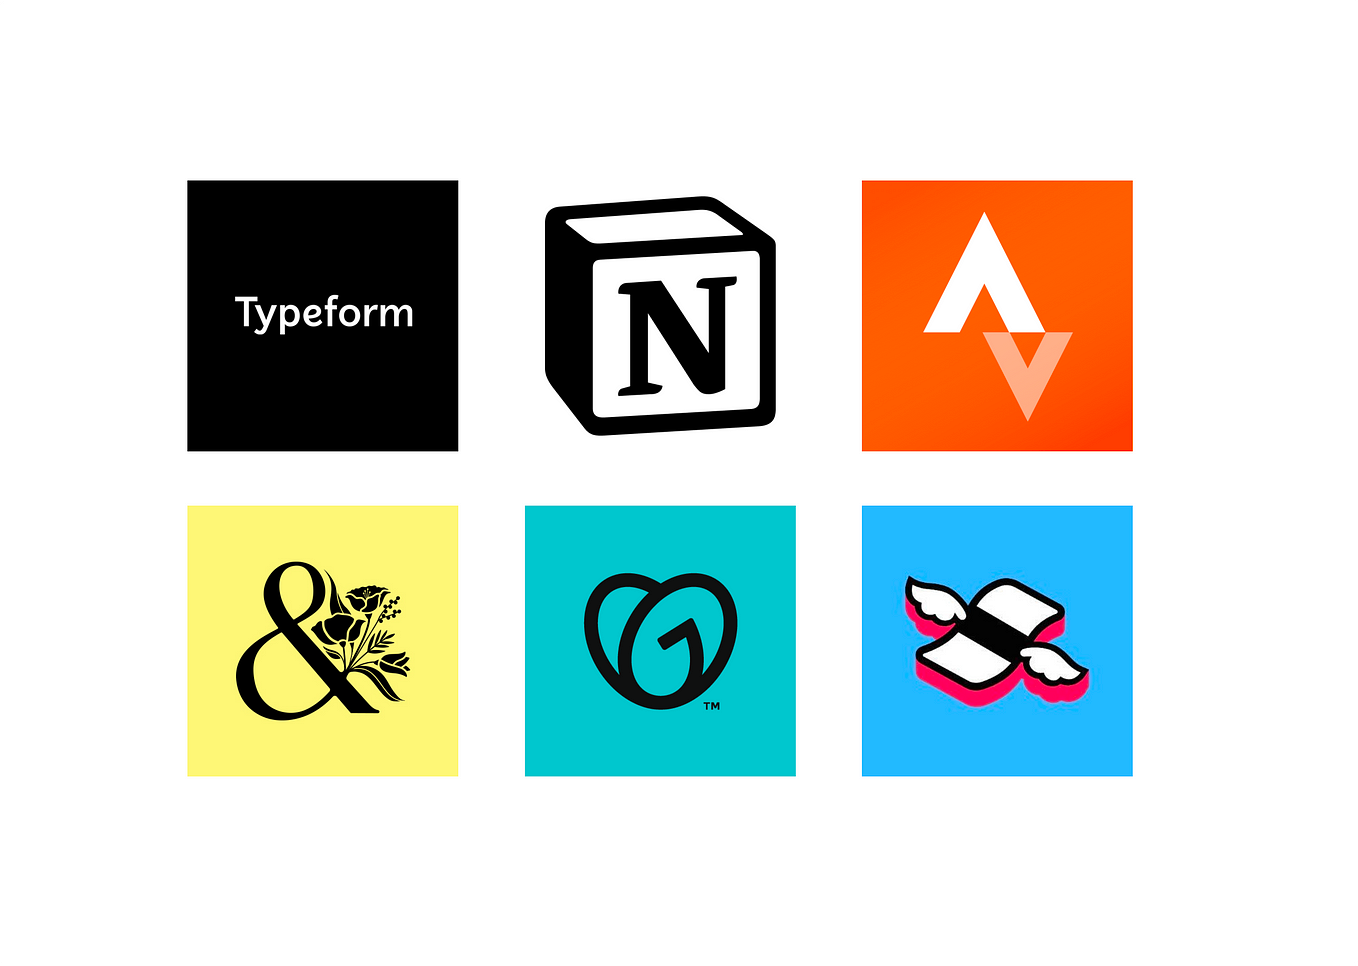 기사에 포함된 6개 제품 이미지: Typeform, Notion, Strava, Bloom & Wild, GoDaddy, Finimize